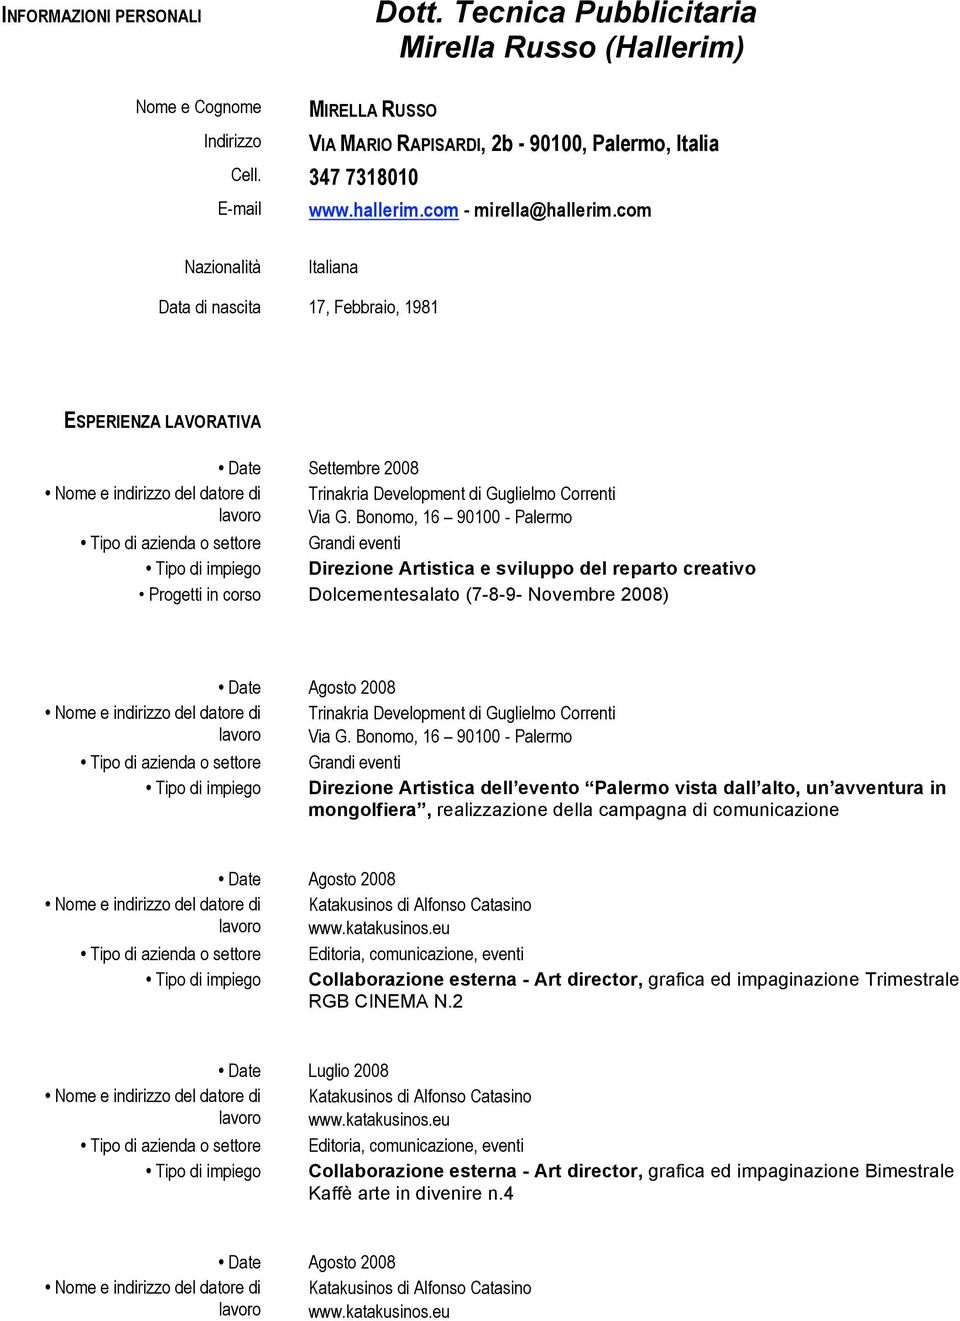 Bonomo, 16 90100 - Palermo Tipo di azienda o settore Grandi eventi Tipo di impiego Direzione Artistica e sviluppo del reparto creativo Progetti in corso Dolcementesalato (7-8-9- Novembre 2008) Date